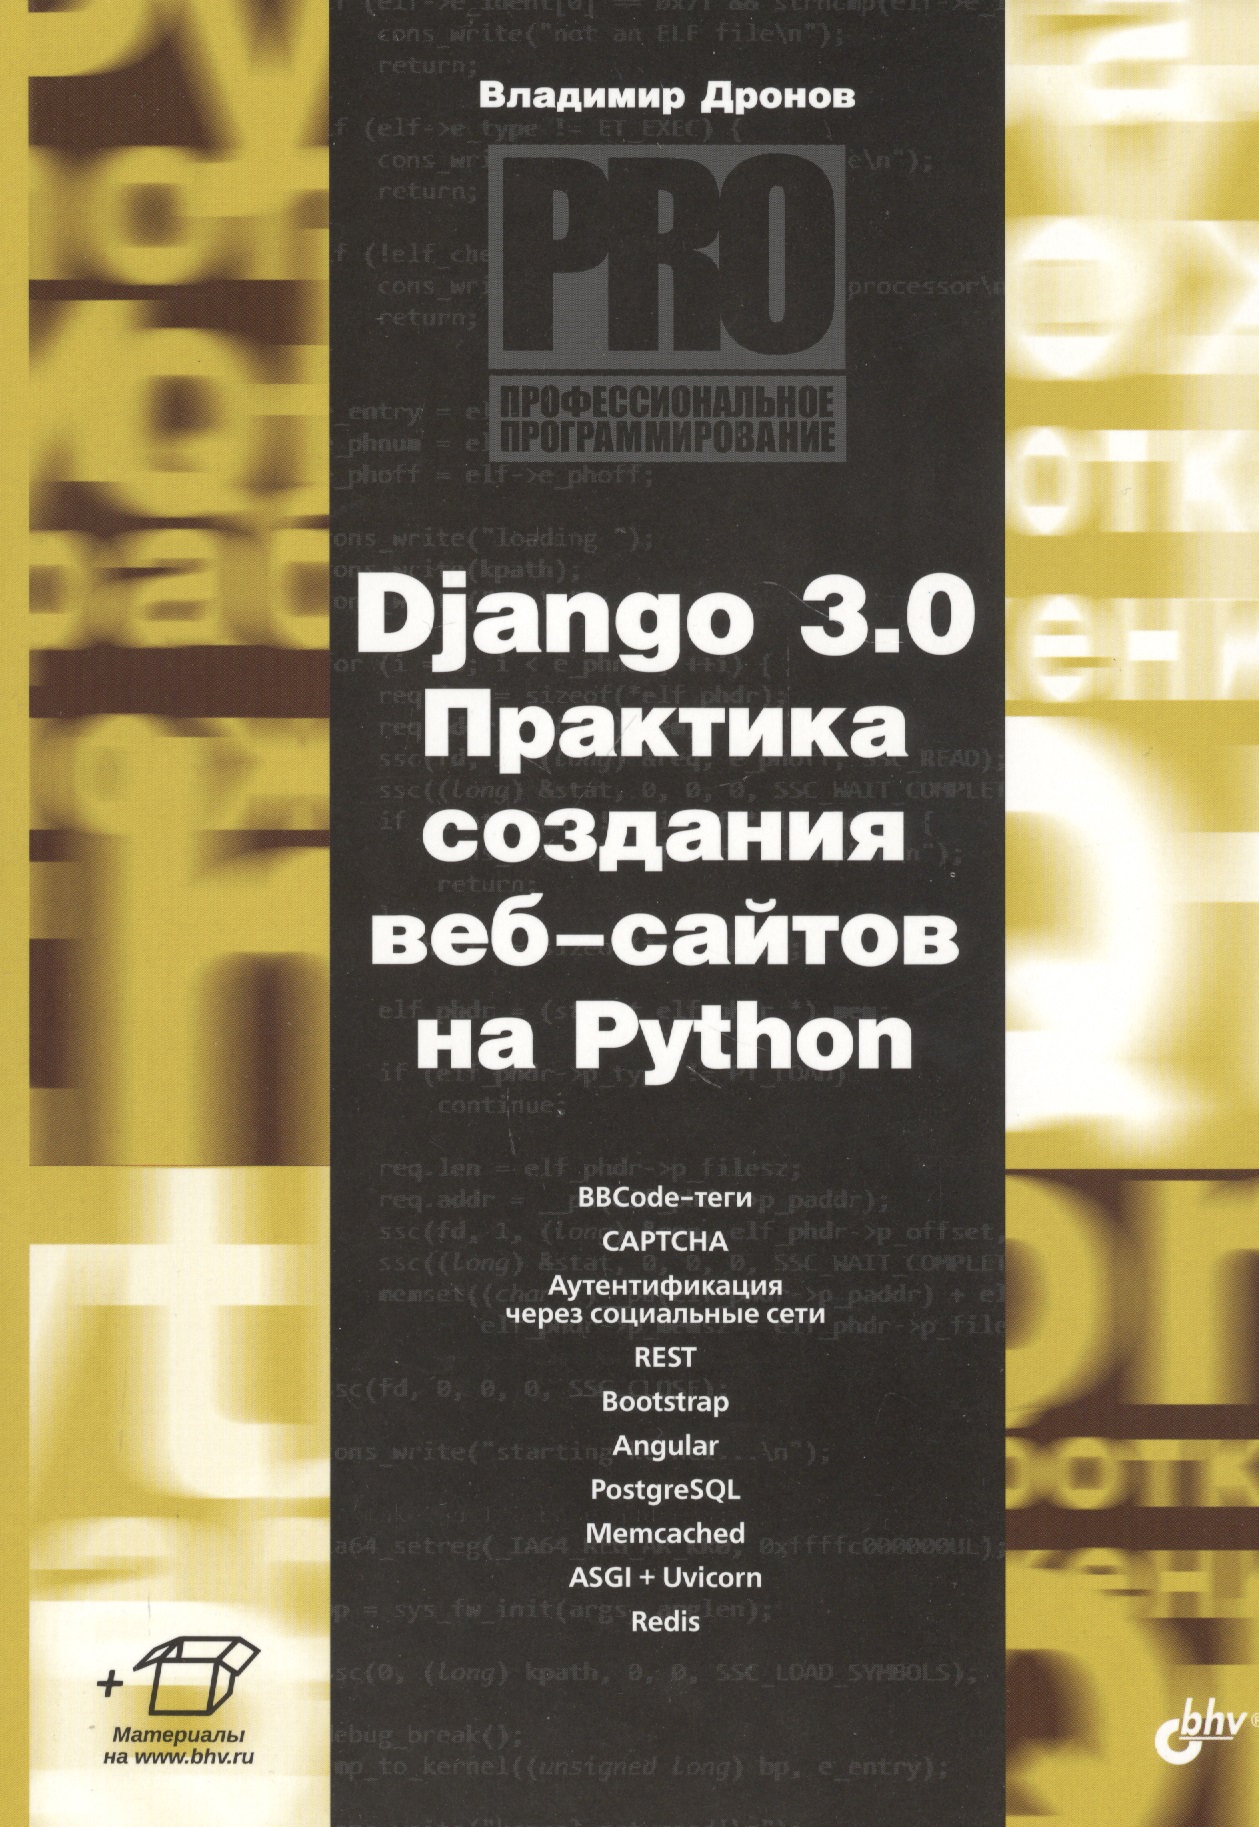 Дронов Владимир Александрович Django 3.0. Практика создания веб-сайтов на Python митчелл райан скрапинг веб сайтов с помощью python сбор данных из современного интернета